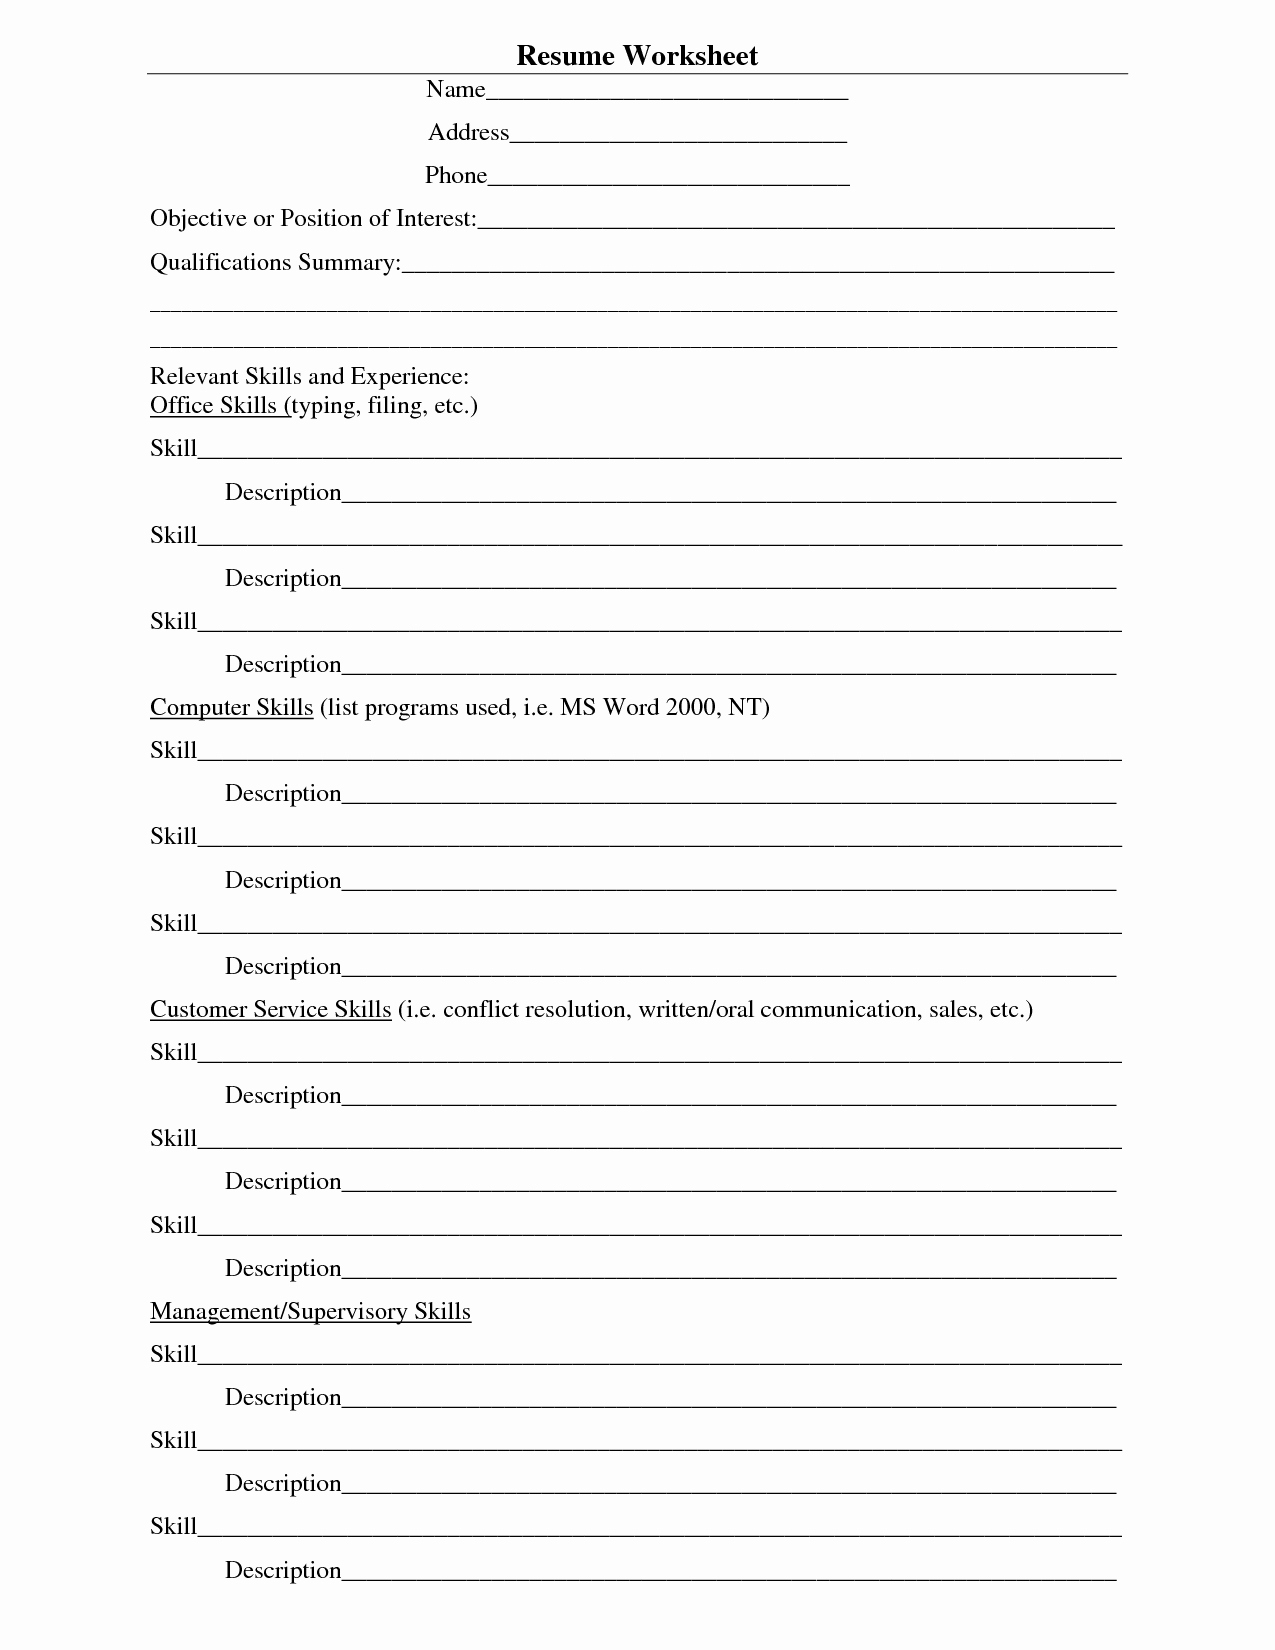 Free Printable Worksheets For Highschool Students – Aggelies-Online.eu - Free Printable Worksheets For Highschool Students